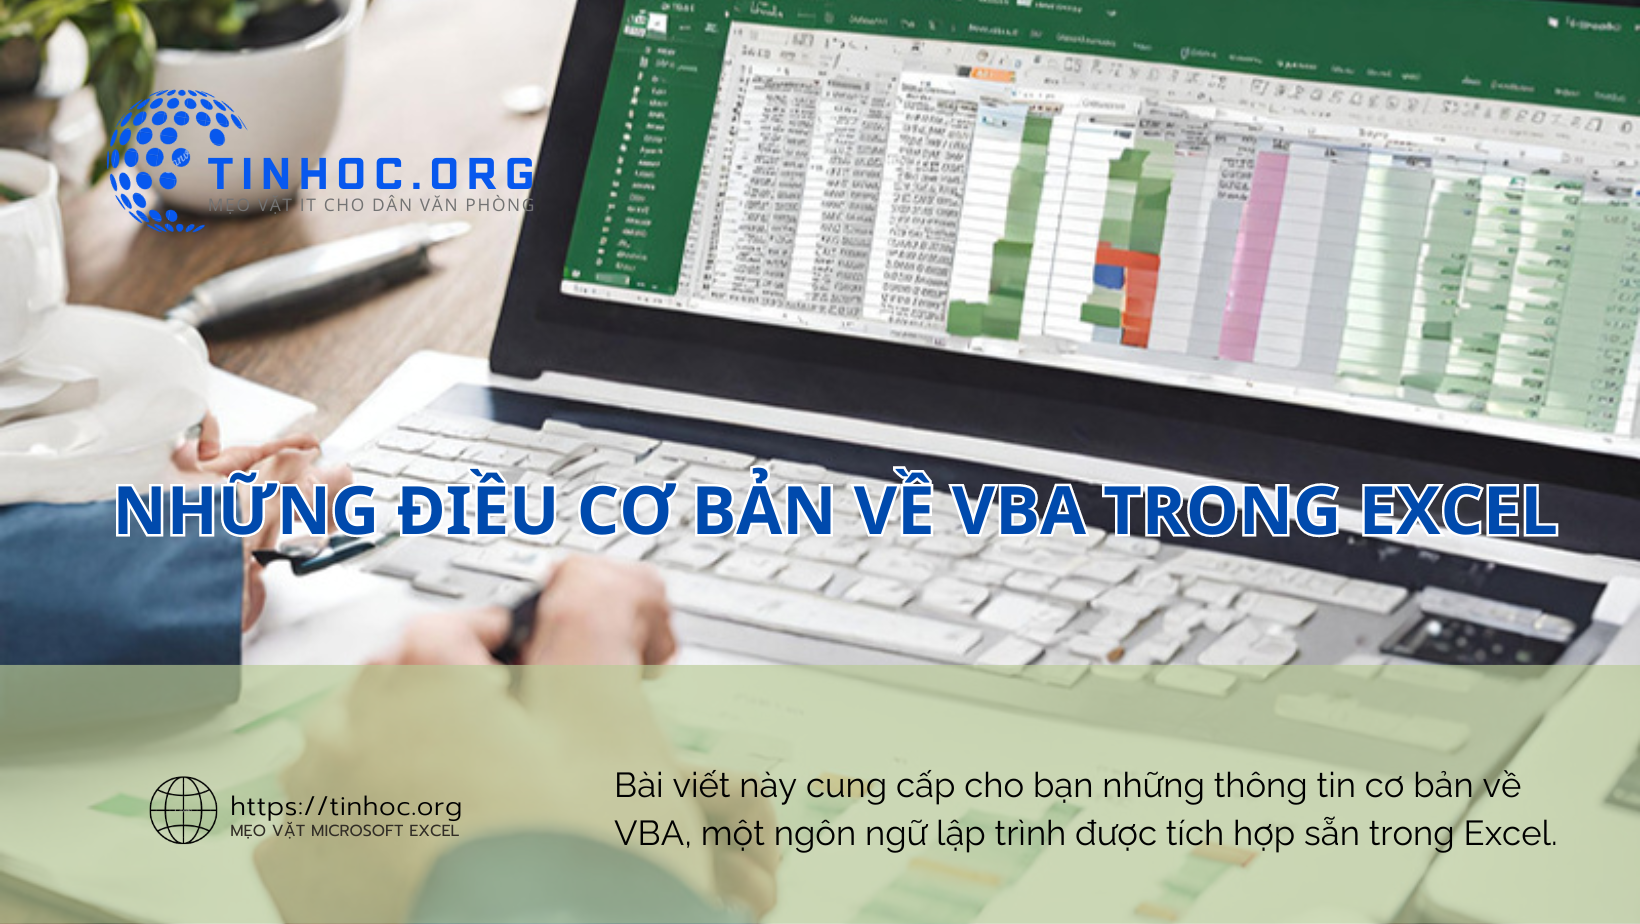 Bài viết này cung cấp cho bạn những thông tin cơ bản về VBA, một ngôn ngữ lập trình được tích hợp sẵn trong Excel.